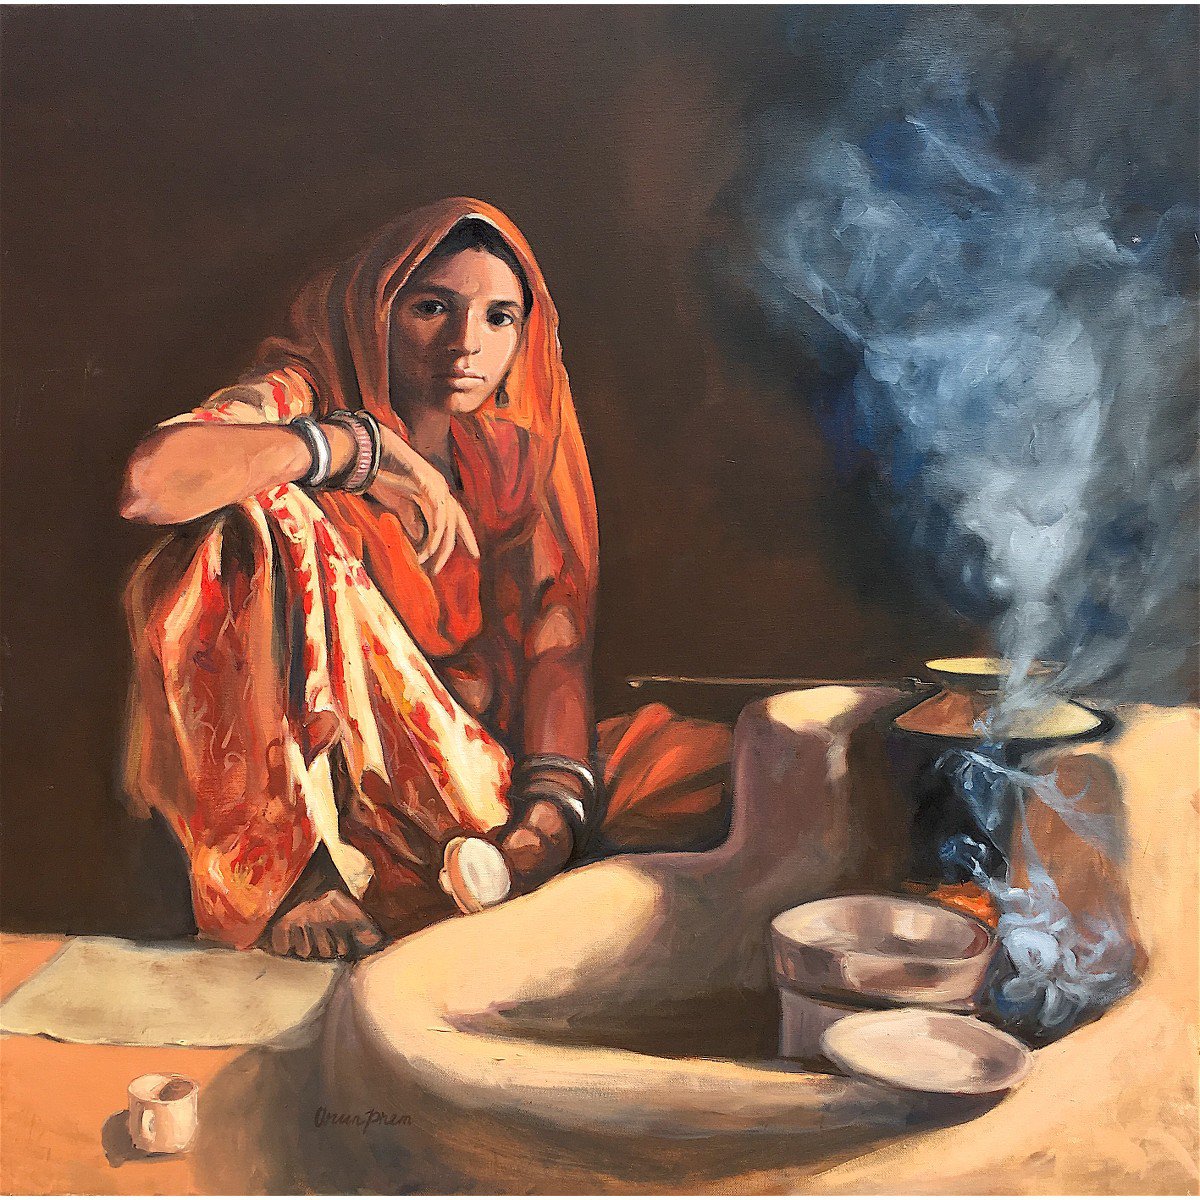 Chai Tea Latte #3 by Arun Prem